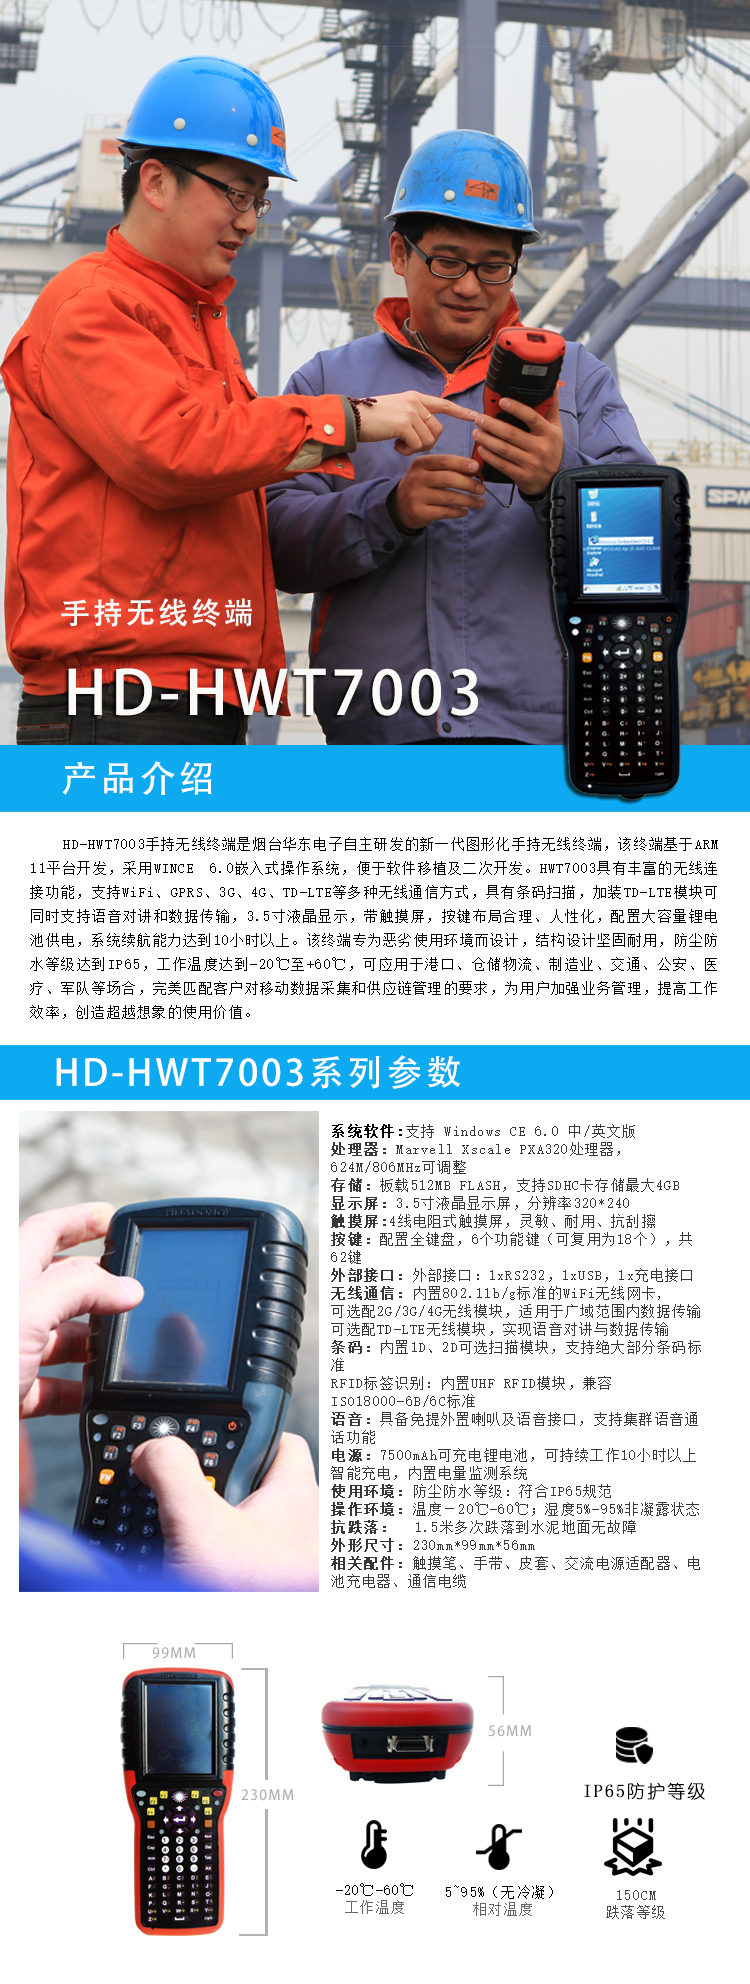 手持无线终端HD-HWT7003.jpg